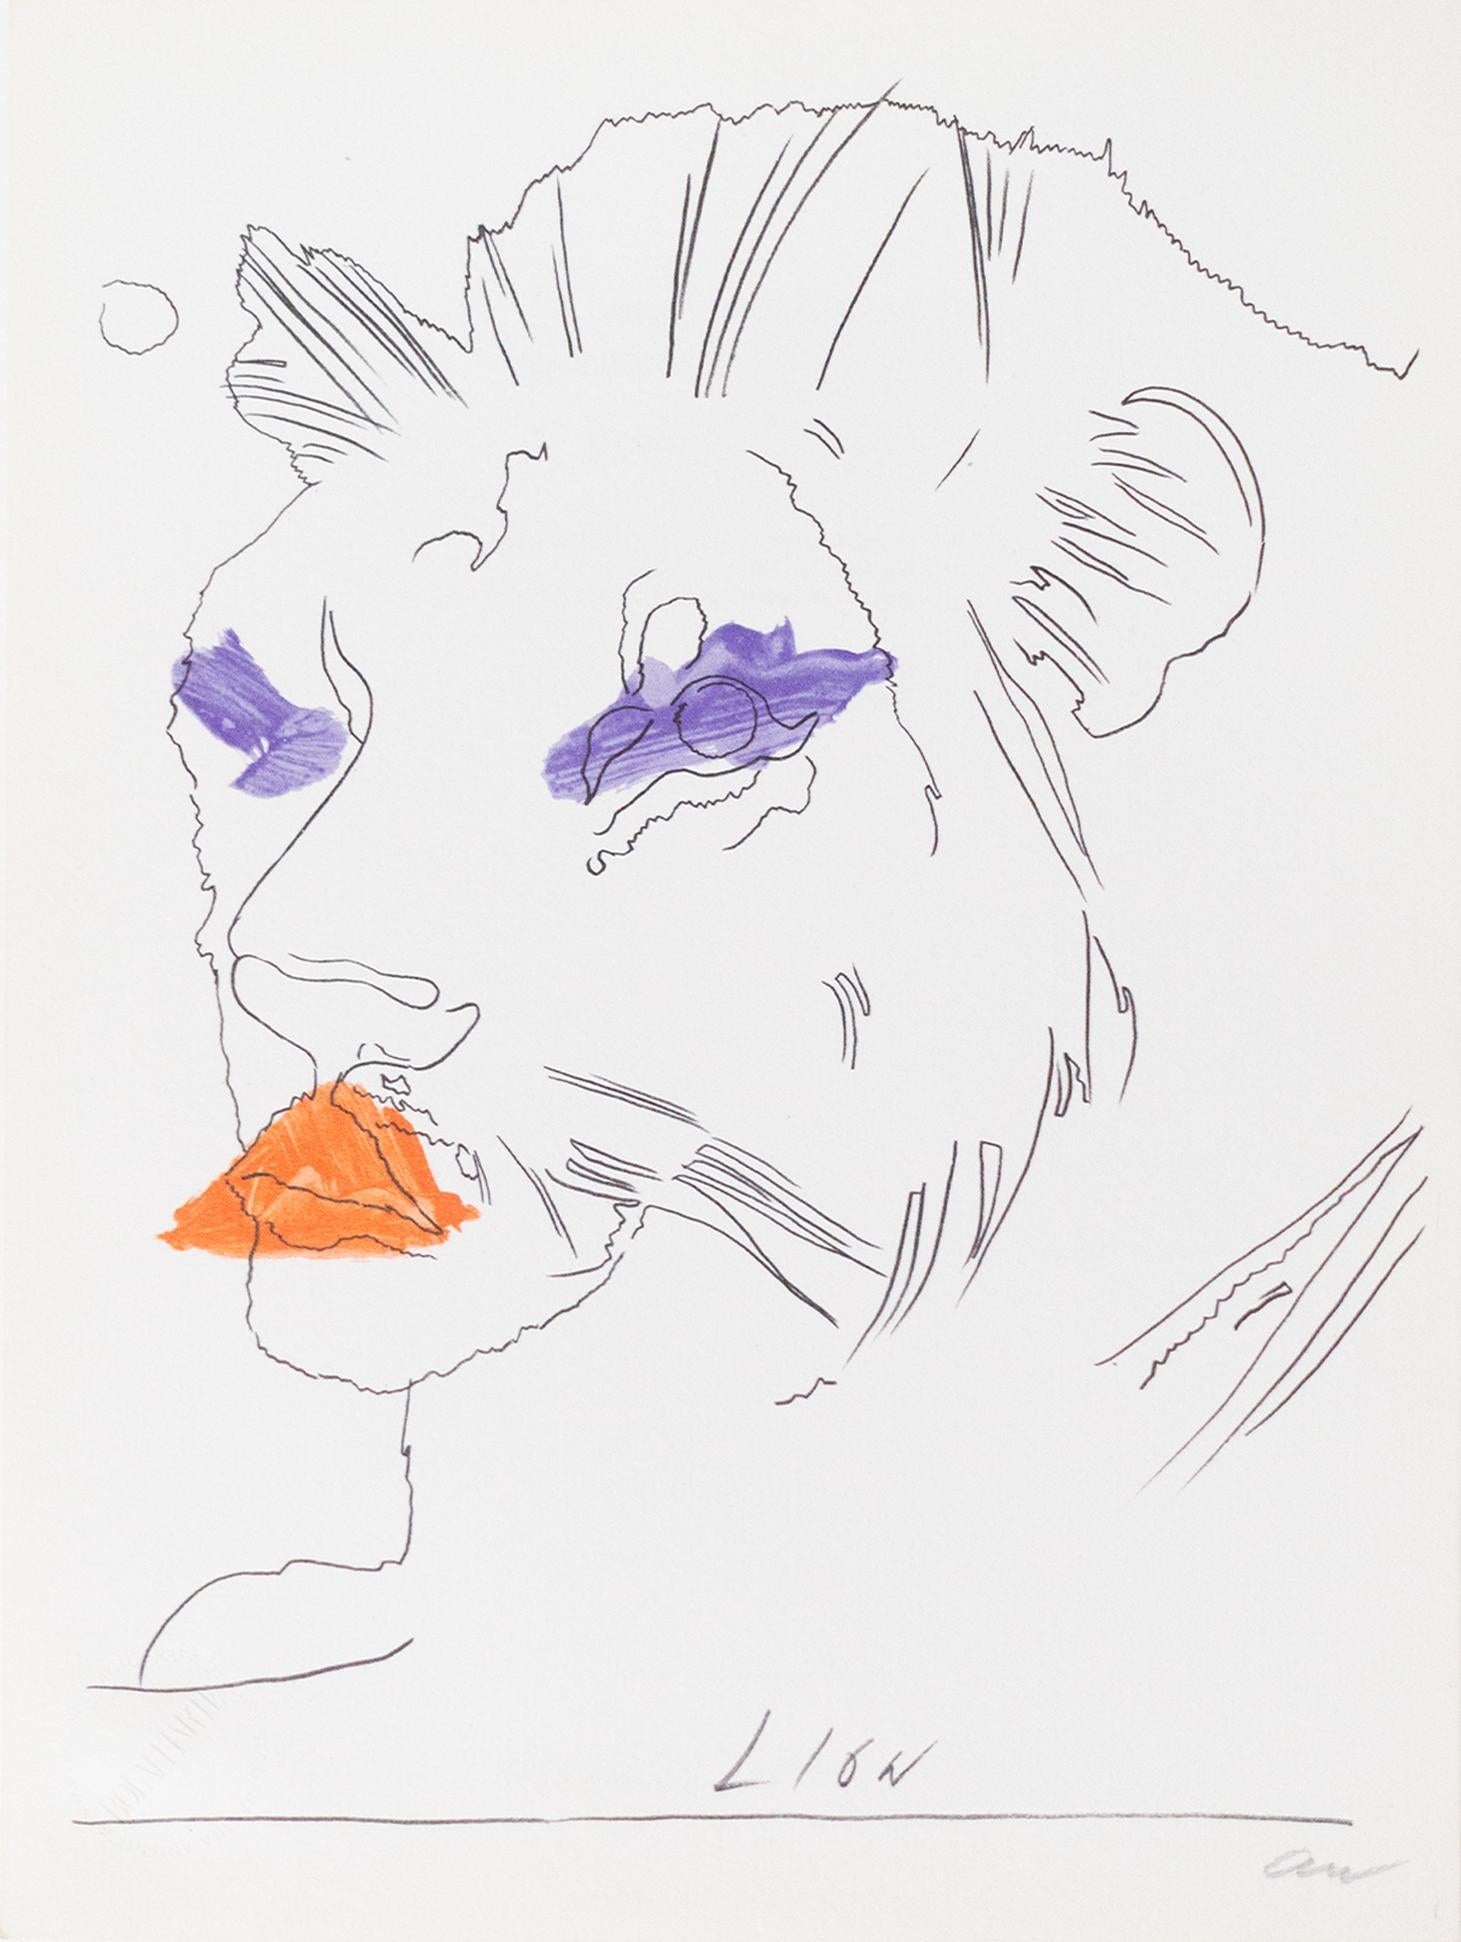 Fotolitografia originale su carta facente parte dell'opera in edizione originale di Andy Warhol "THE LION" espressamente eseguita per la serie "LO ZODIACO/The Zodiac" per "BOLAFFI ARTE".
L'edizione è stata eseguita in 5.000 esemplari numerati da 1 a